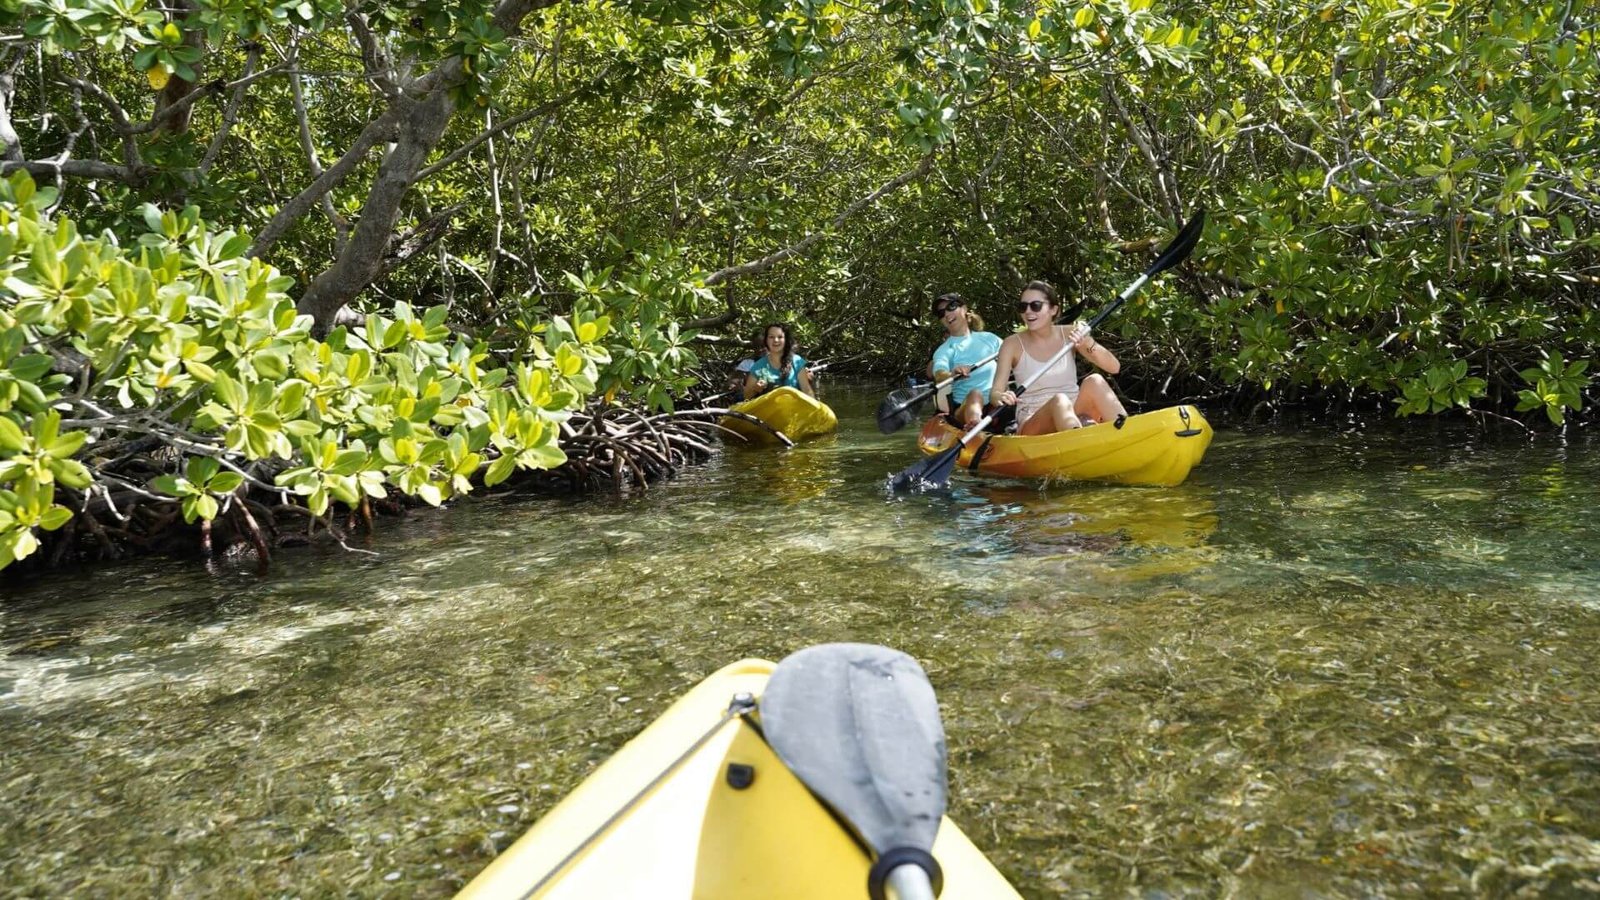 Un groupe de trois personnes faisant du kayak dans un marais de mangrove en Guadeloupe. Ils naviguent à travers les eaux claires et calmes, entourés de verdure luxuriante et de racines de mangrove. Les deux kayaks visibles sont jaunes et équipés de pagaies noires. La scène dépeint une activité de plein air paisible et pittoresque, typique des excursions en kayak dans la région.